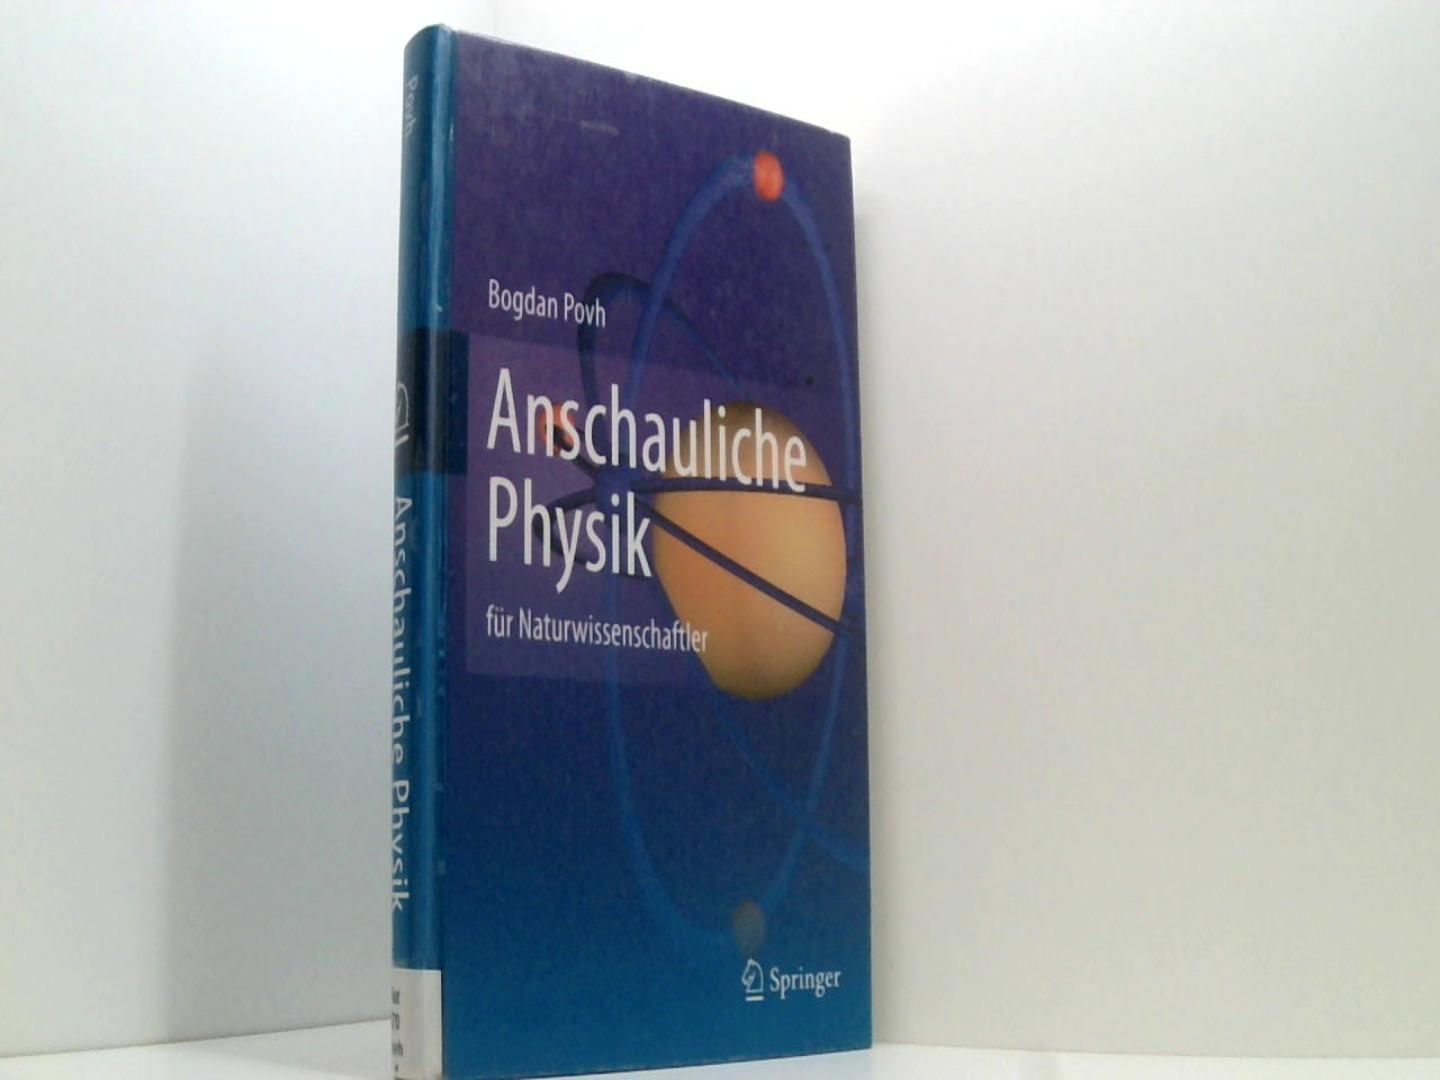 Anschauliche Physik: für Naturwissenschaftler  2011 - Povh, Bogdan